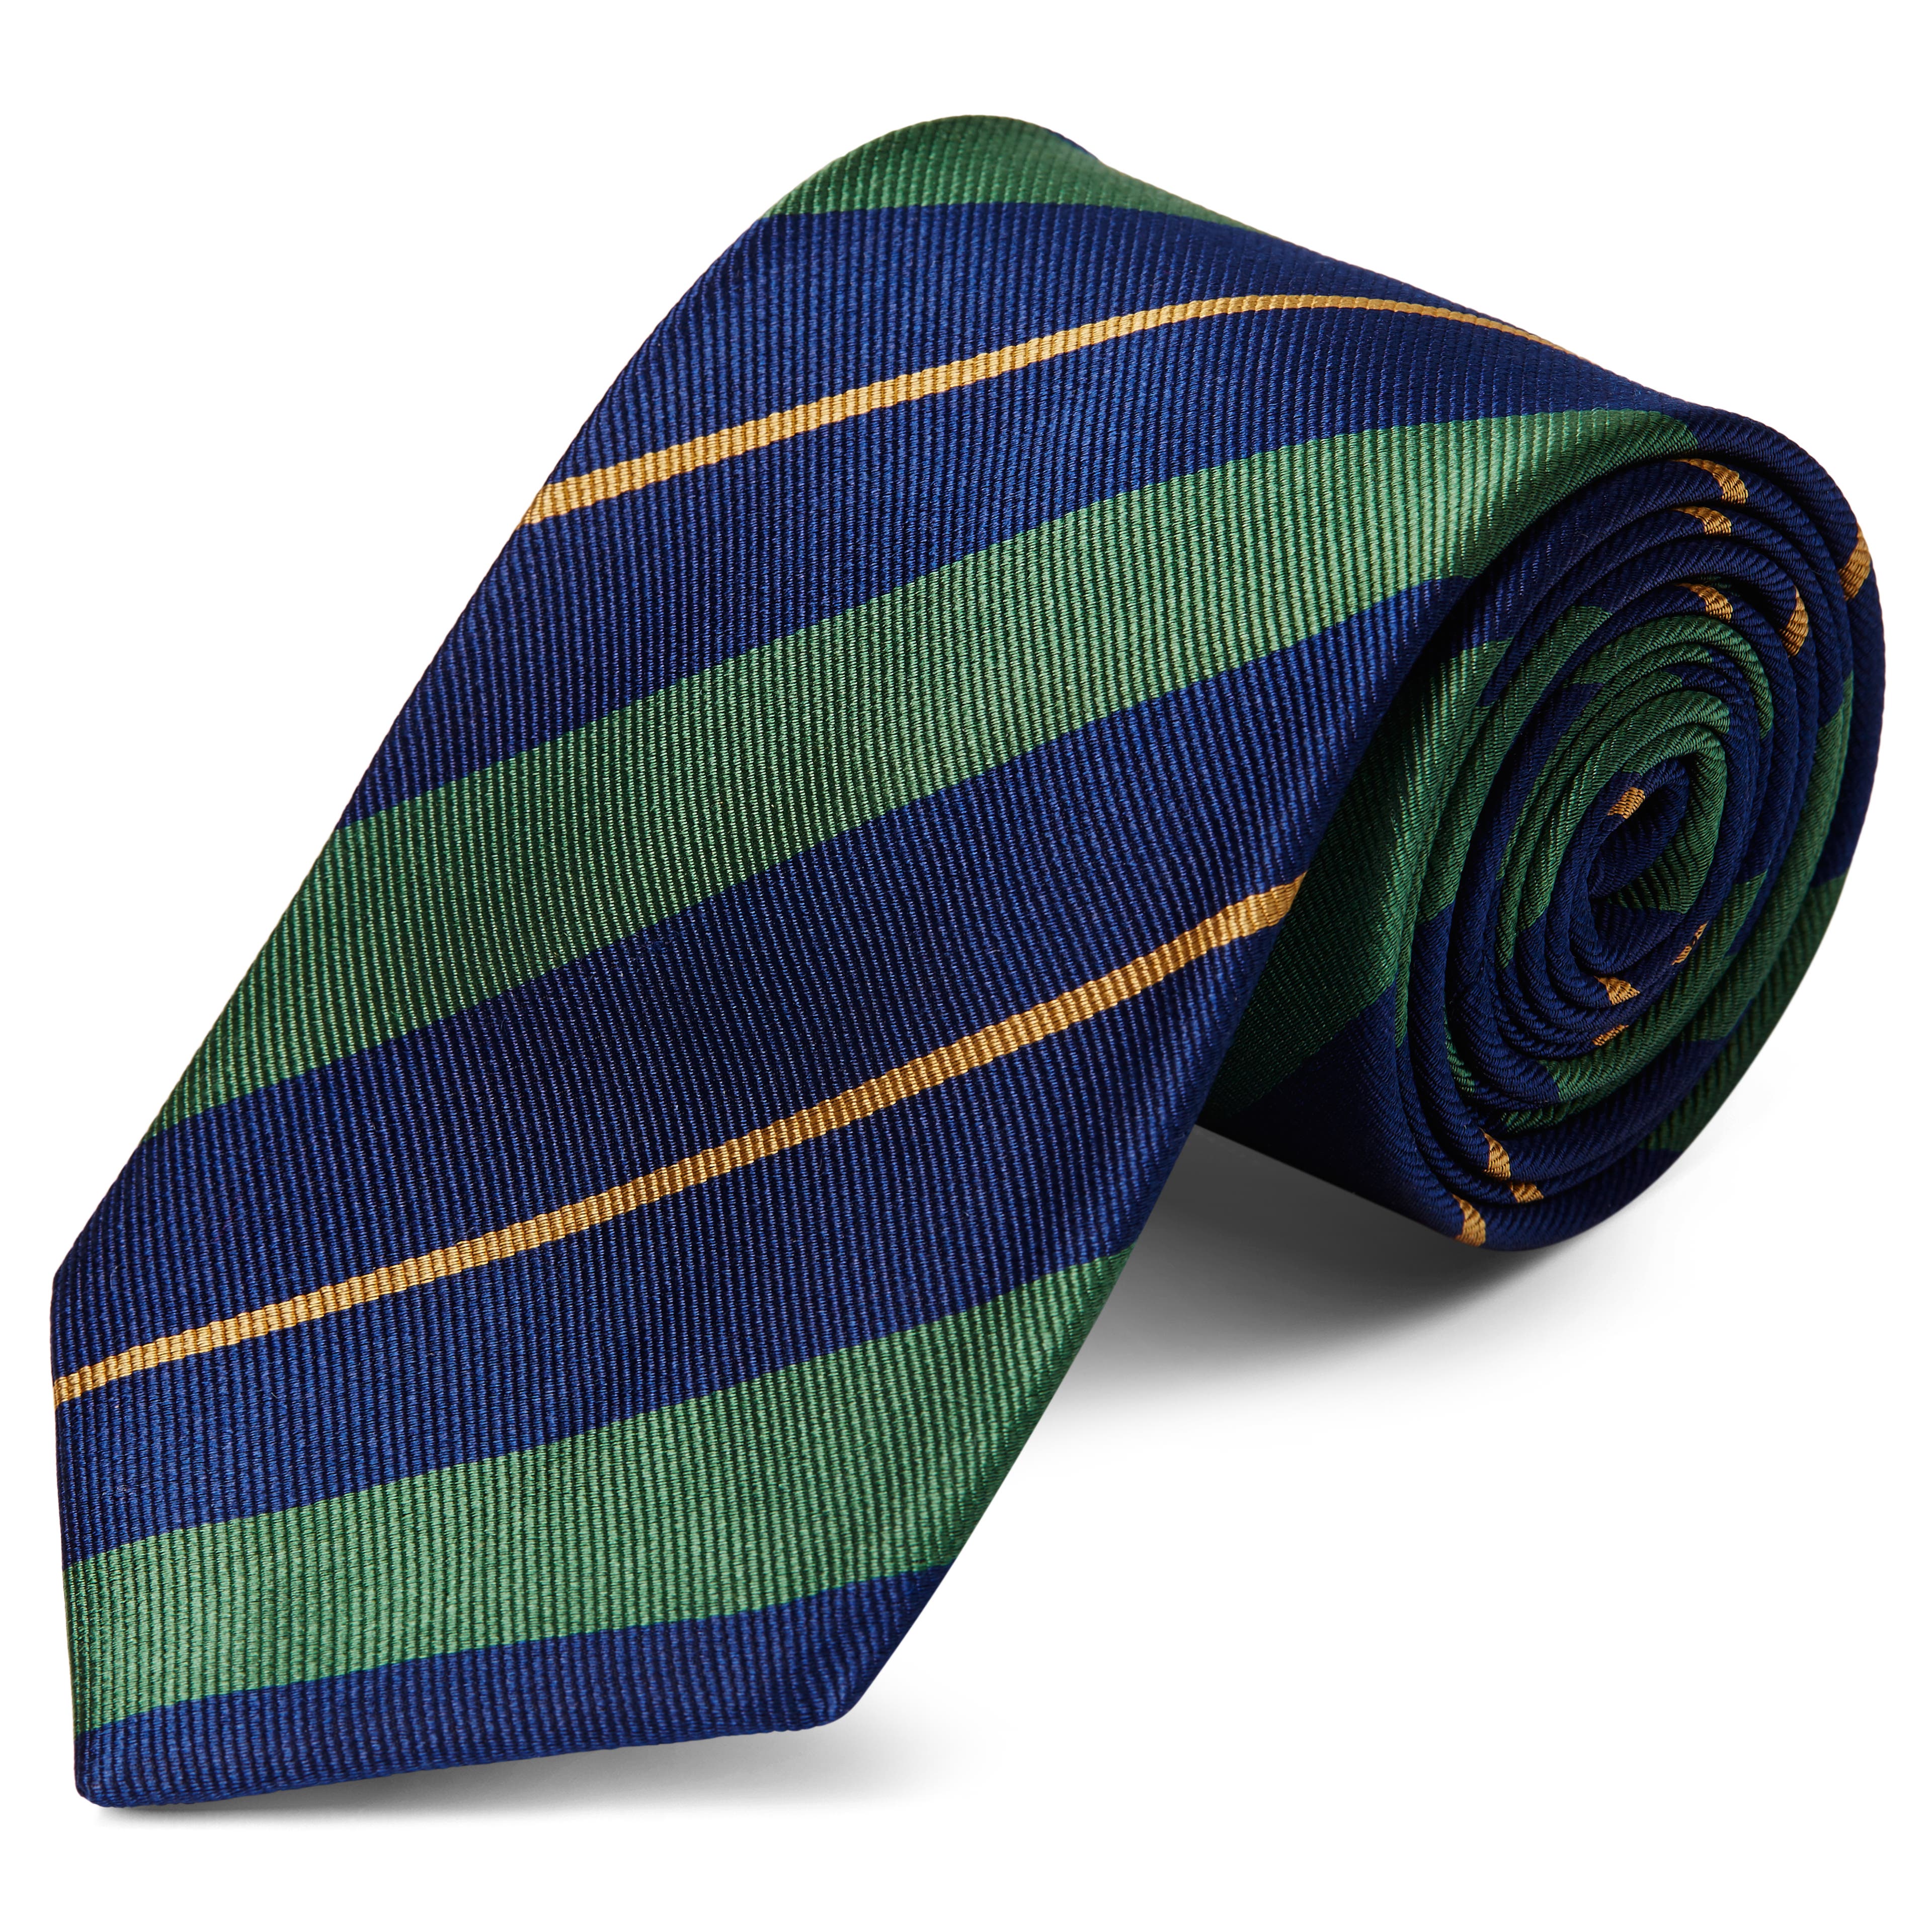 Ciemnogranatowy krawat jedwabny w zielono-złote paski 8 cm